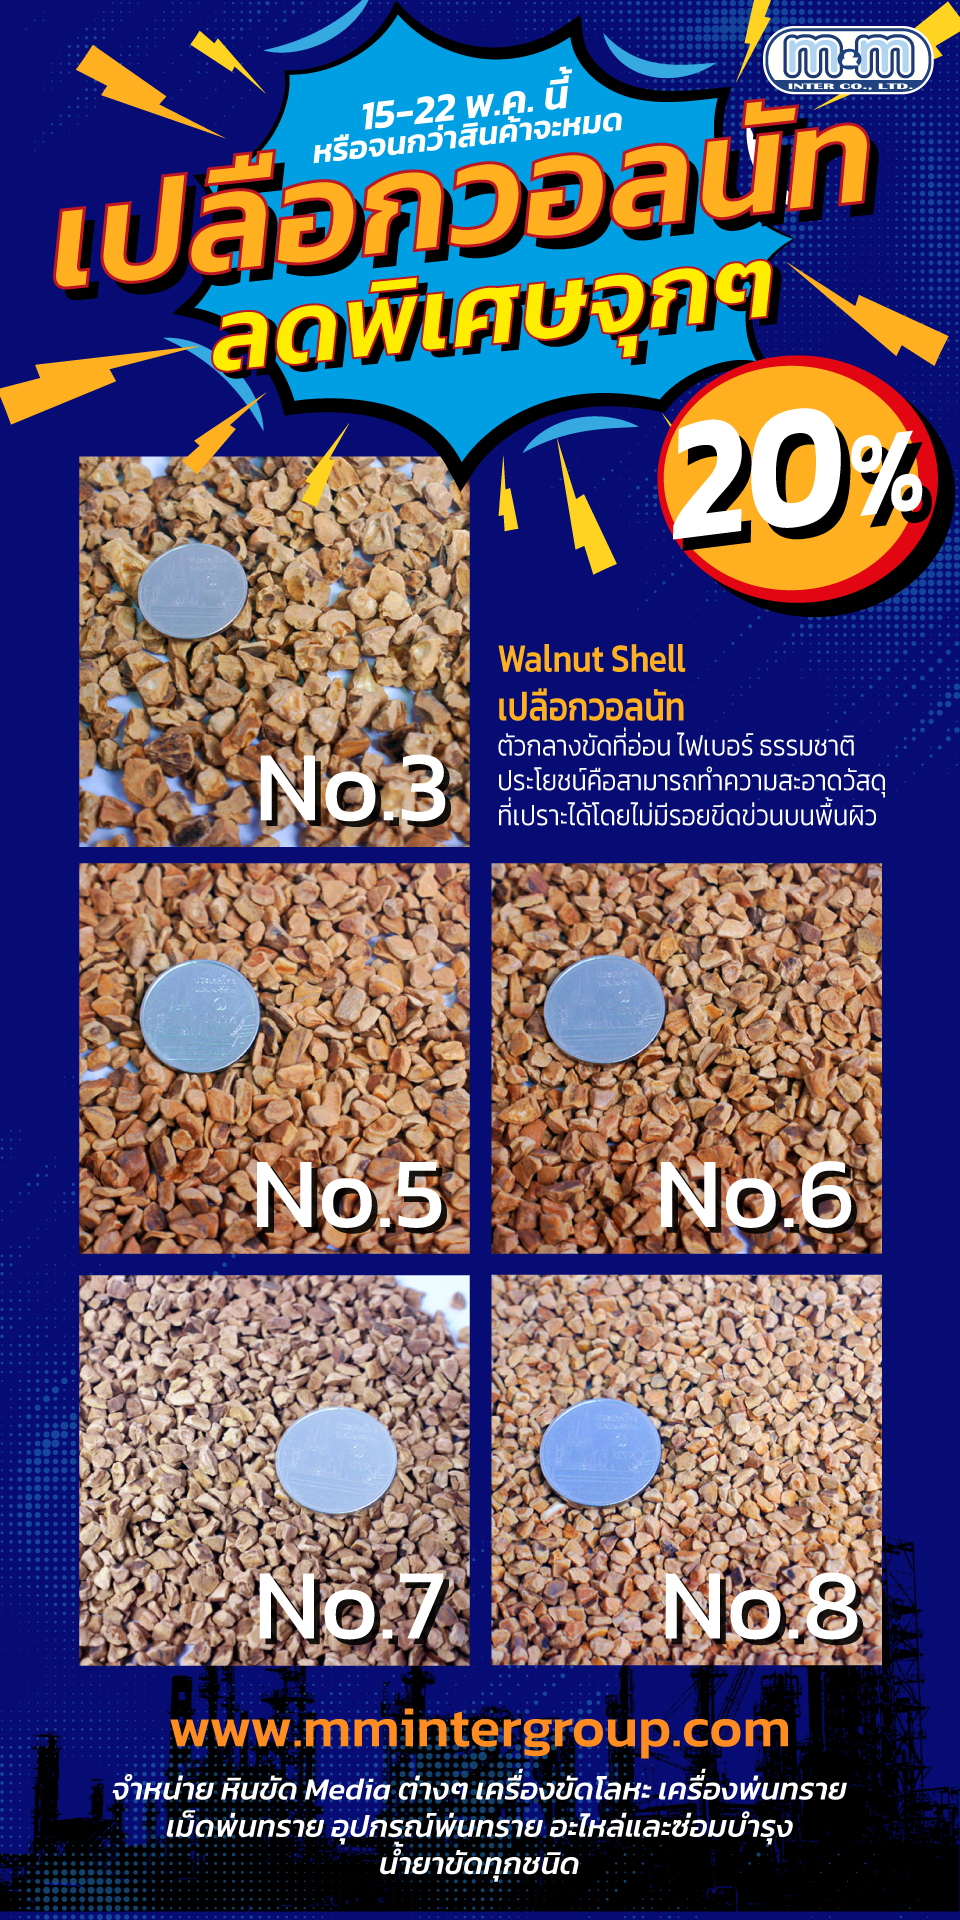 โปรโมชั่น เดือน พ.ค. Walnut Shell – เปลือกวอลนัท ลดพิเศษแบบจุกๆ มากกว่า 20% เบอร์ 3 - 5 - 6 - 7 - 8 15 พ.ค. - 22 พ.ค. หรือจนกว่าสินค้าจะหมด